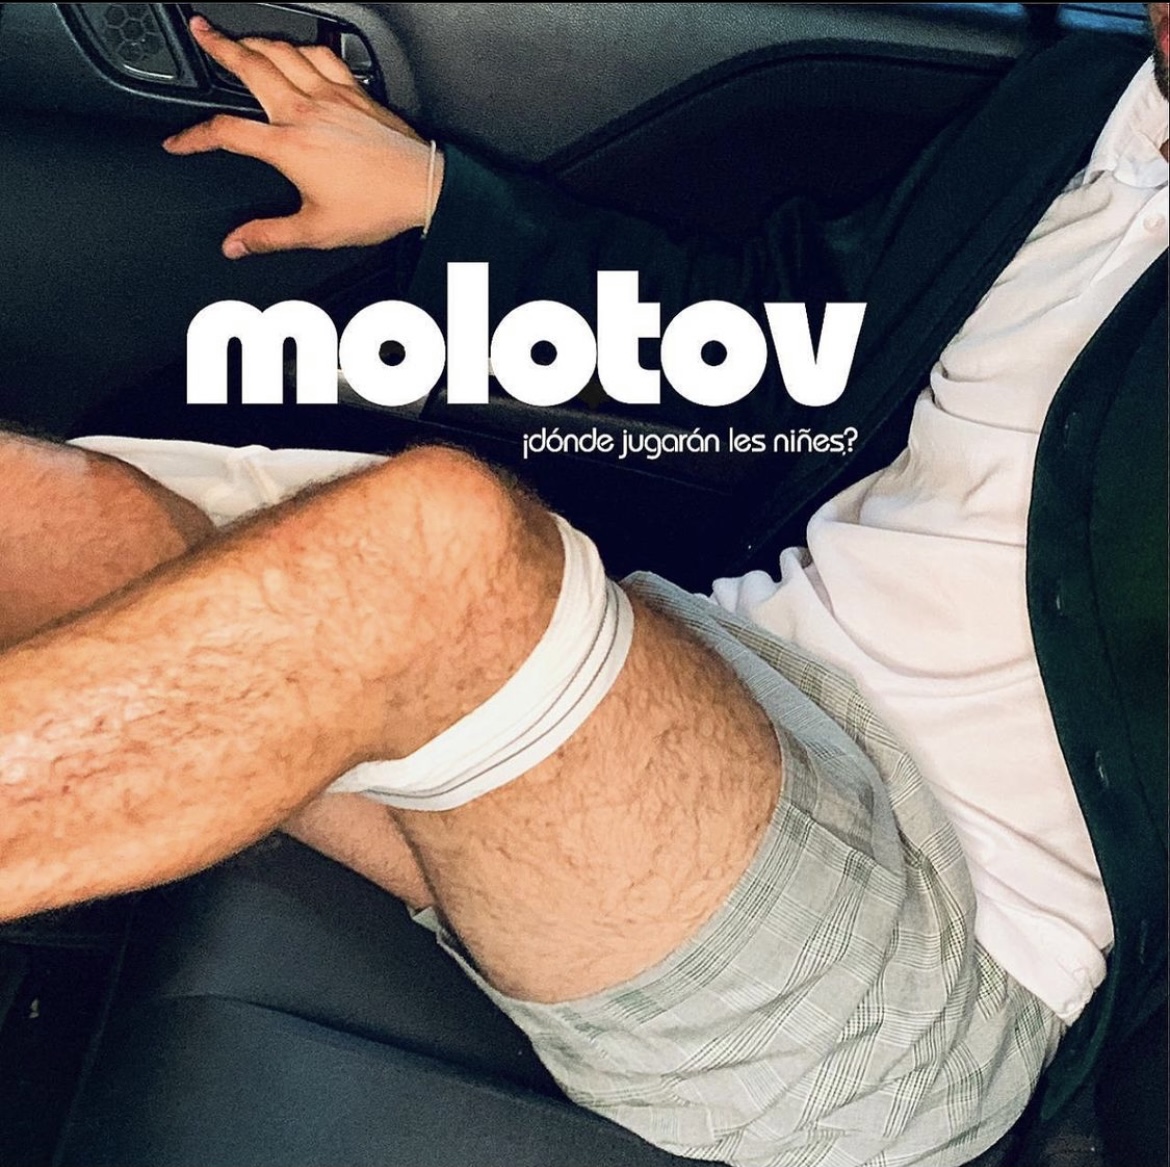 molotov 2021 - Mrpico Collection | OpenSea